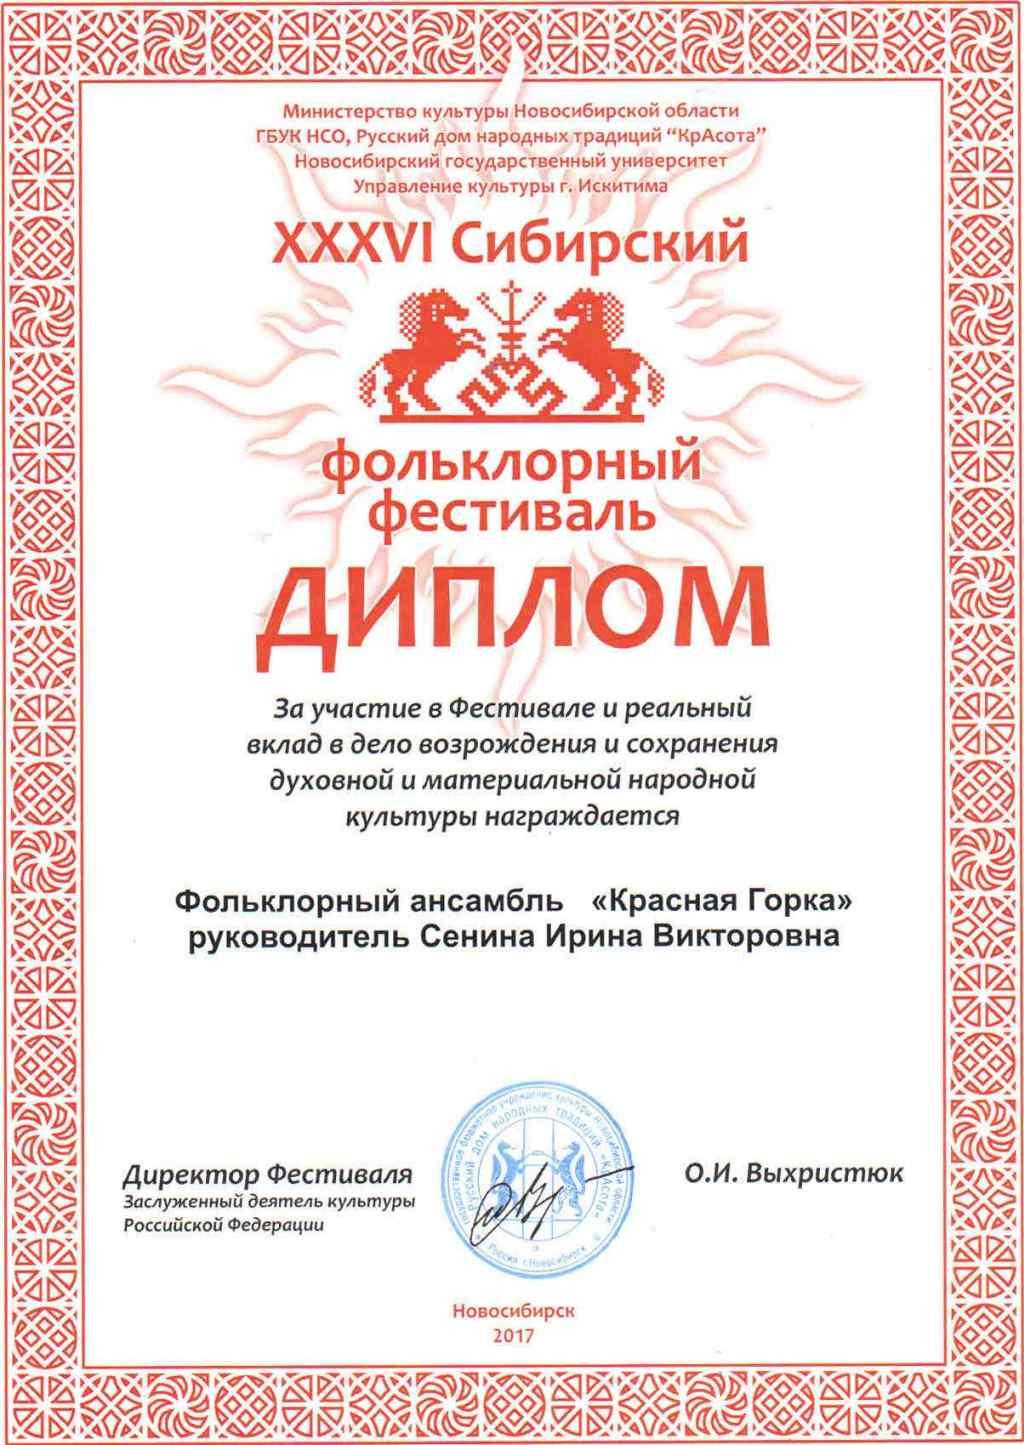 XXXVI Сибирский фольклорный фестиваль